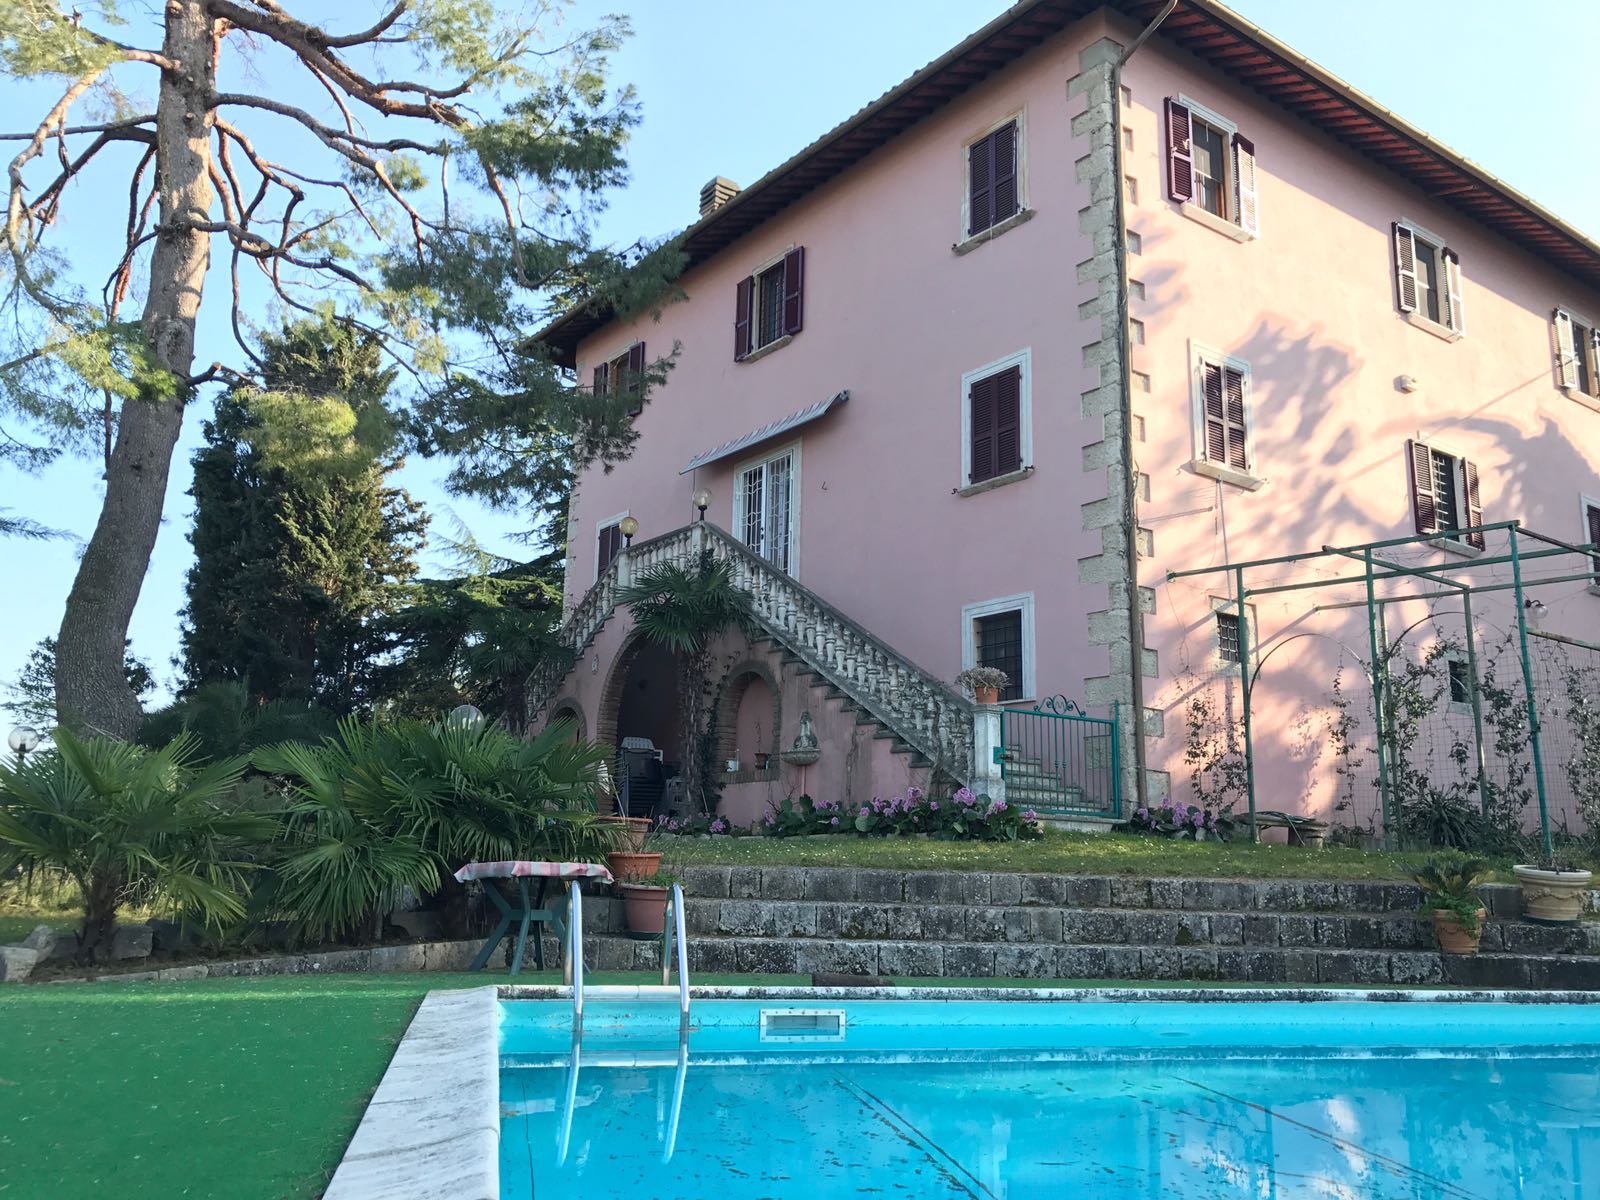 Vende villa Ascoli Piceno lisciano